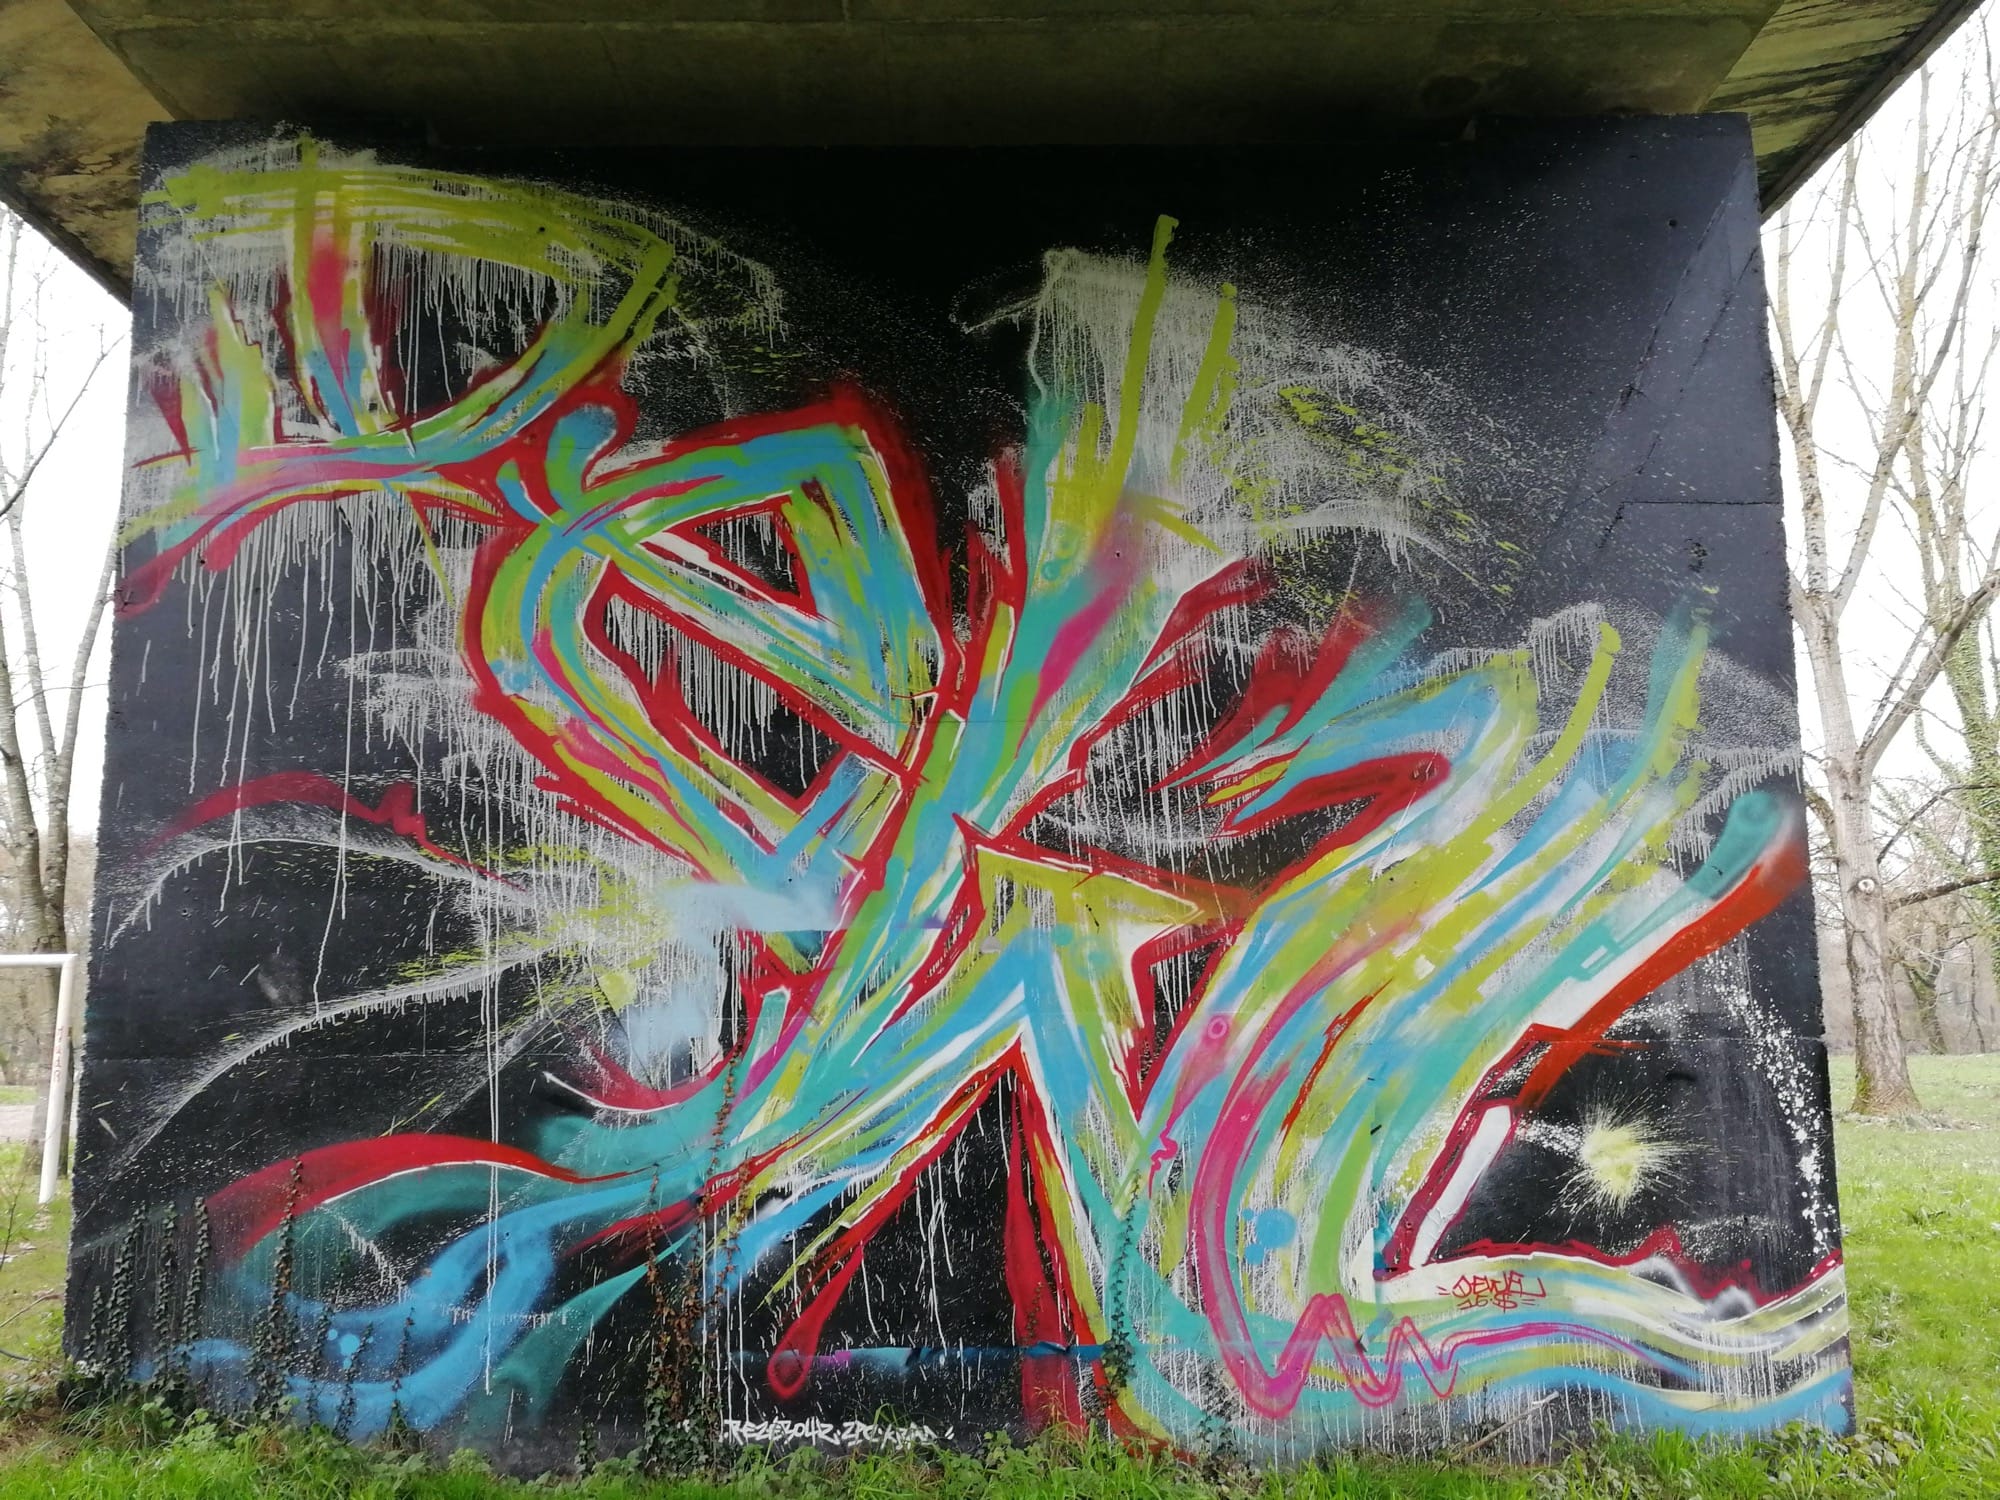 Graffiti 577  captured by Rabot in Rezé France